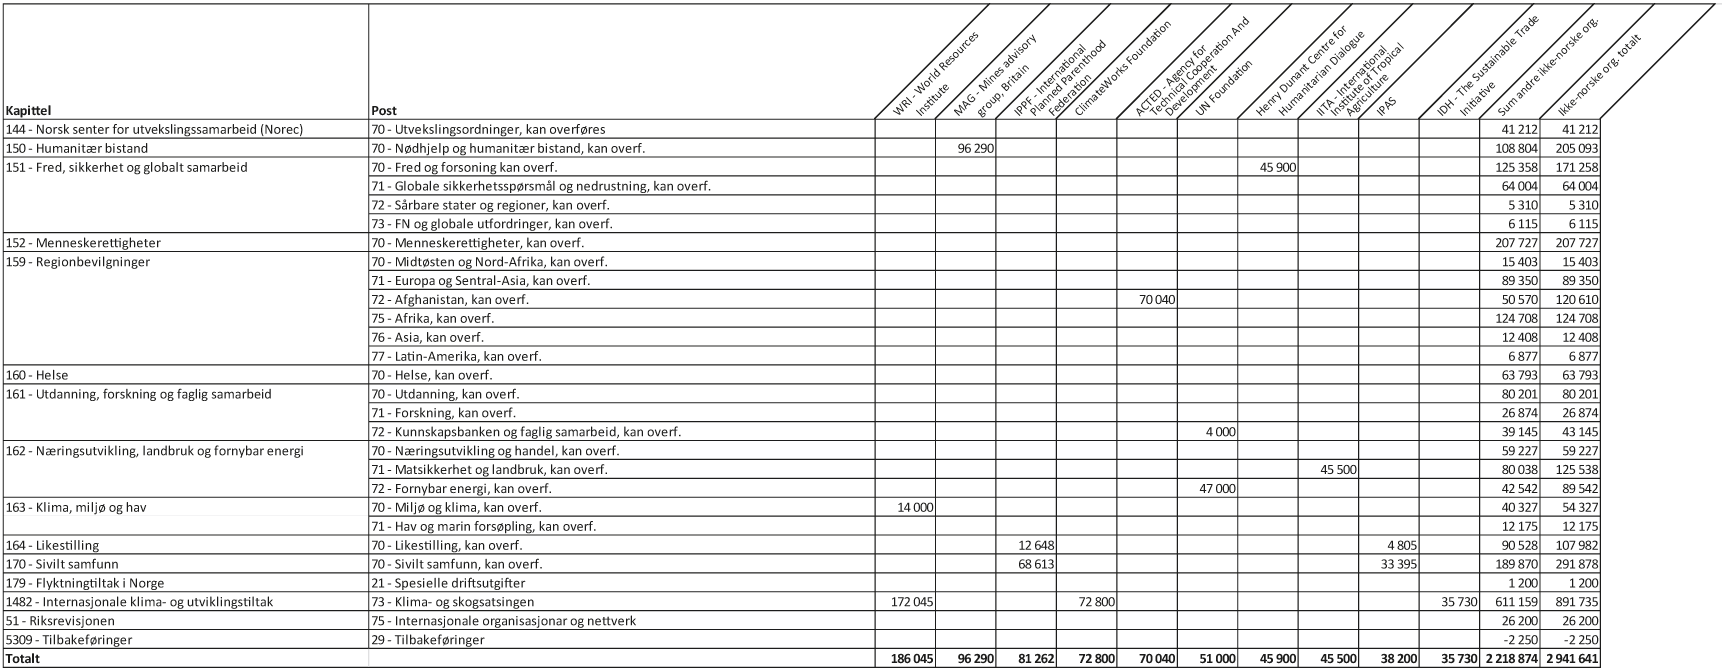 Figur 3.1 Bistand gjennom ikke-norske, ikke-statlige organisasjoner/stiftelser1 fordelt på kapittel og post, 20192 (i 1000 kr)